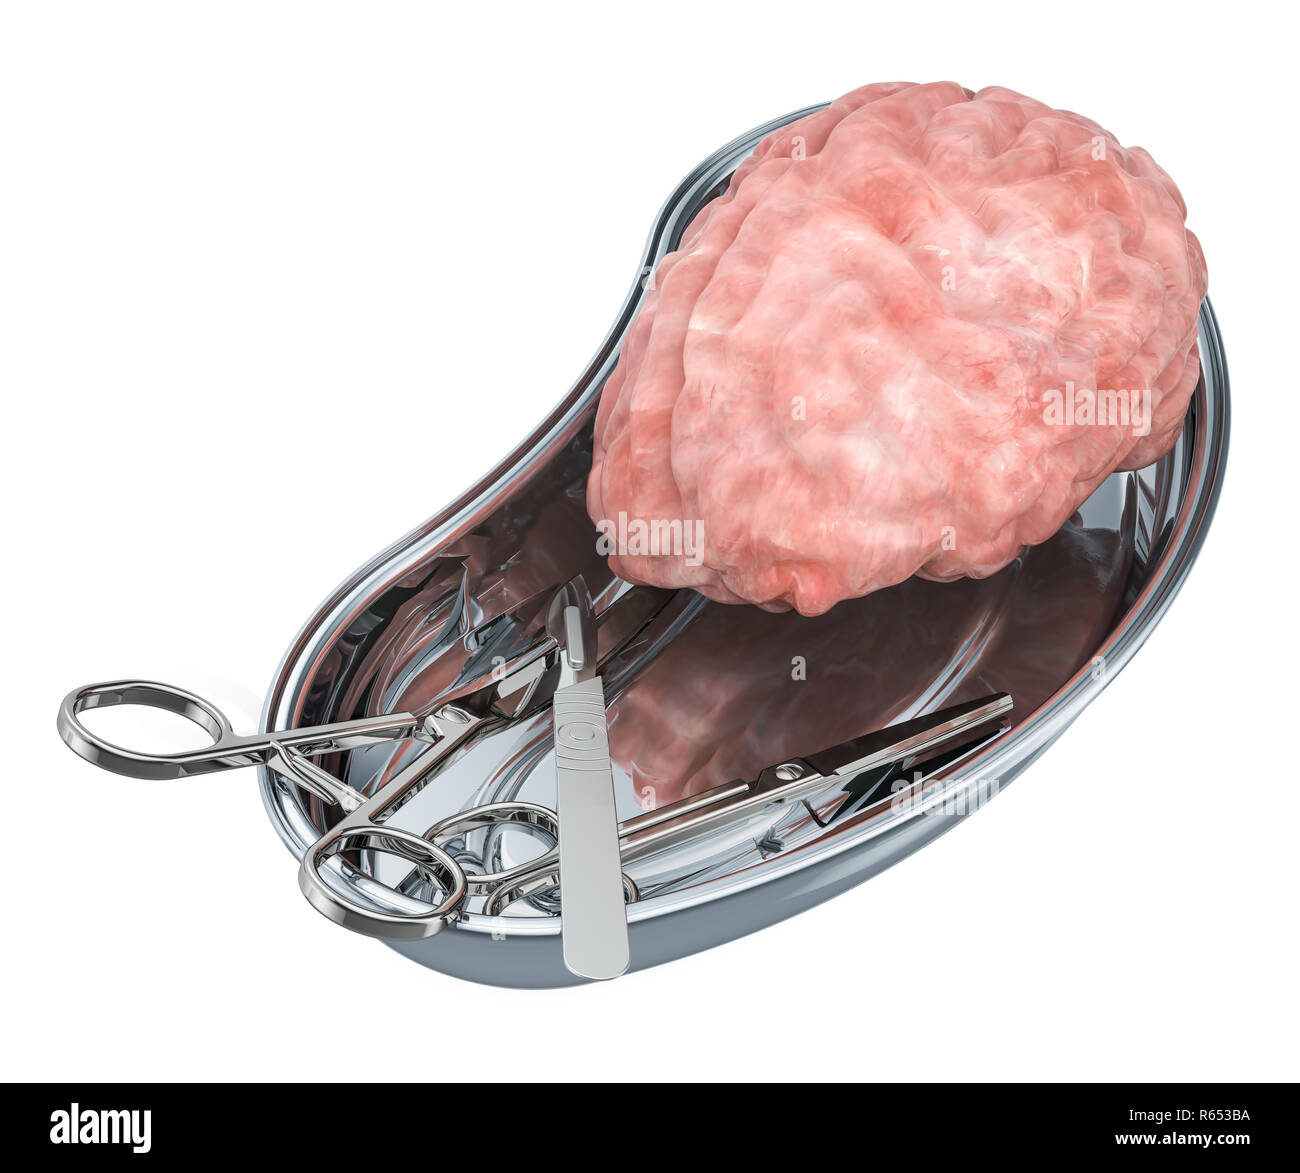 Gehirn Transplantationschirurgie Konzept. Spender Gehirn in metallischen Fach mit chirurgischen Instrumenten, 3D-Rendering Stockfoto